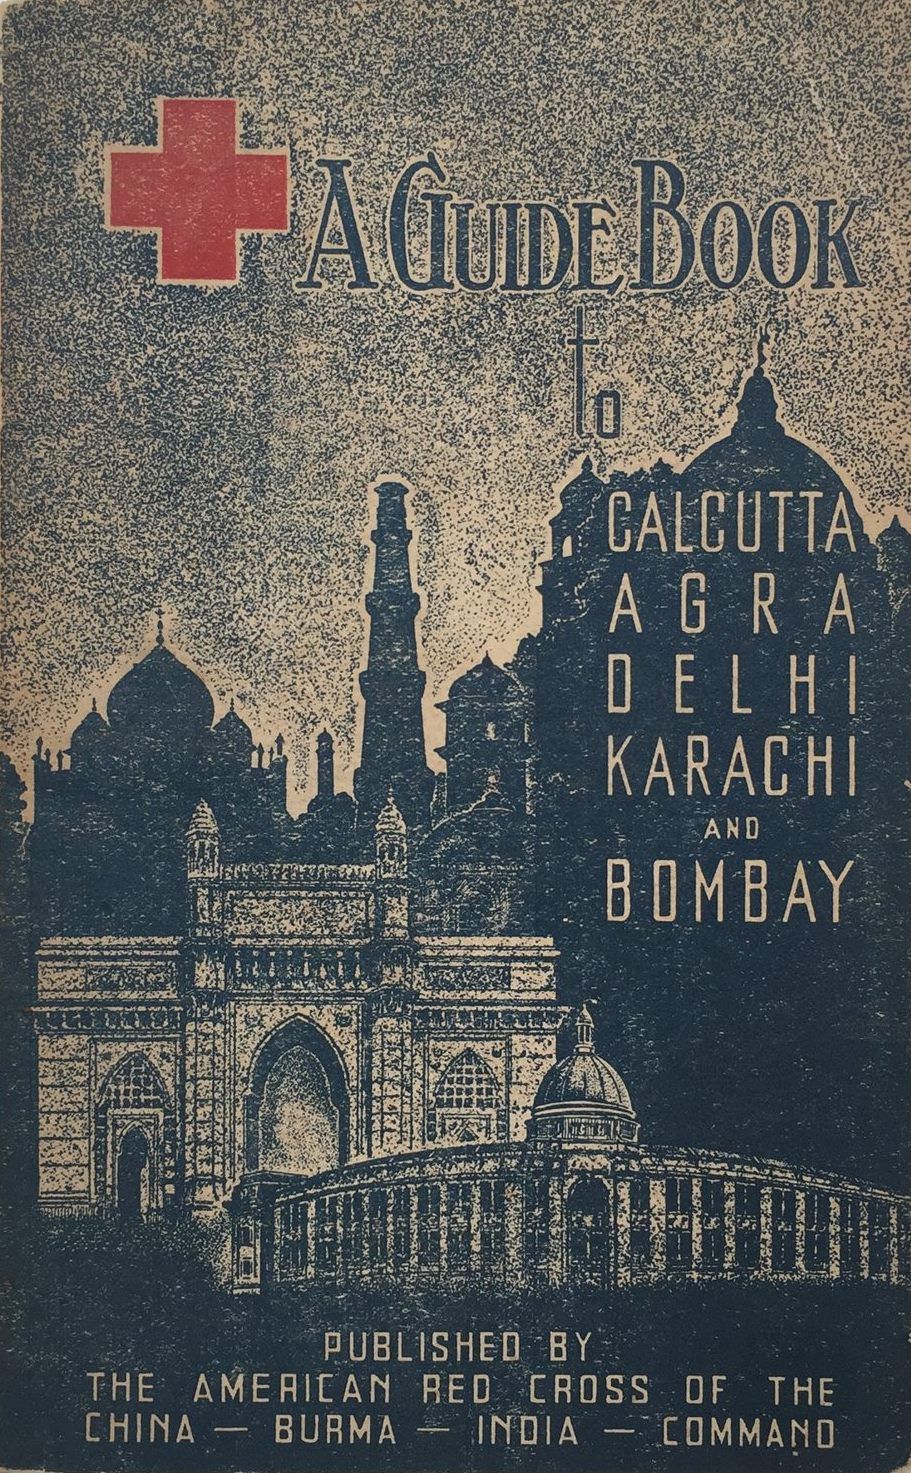 A GUIDE BOOK: To Calcutta Agra Delhi Karachi and Bombay